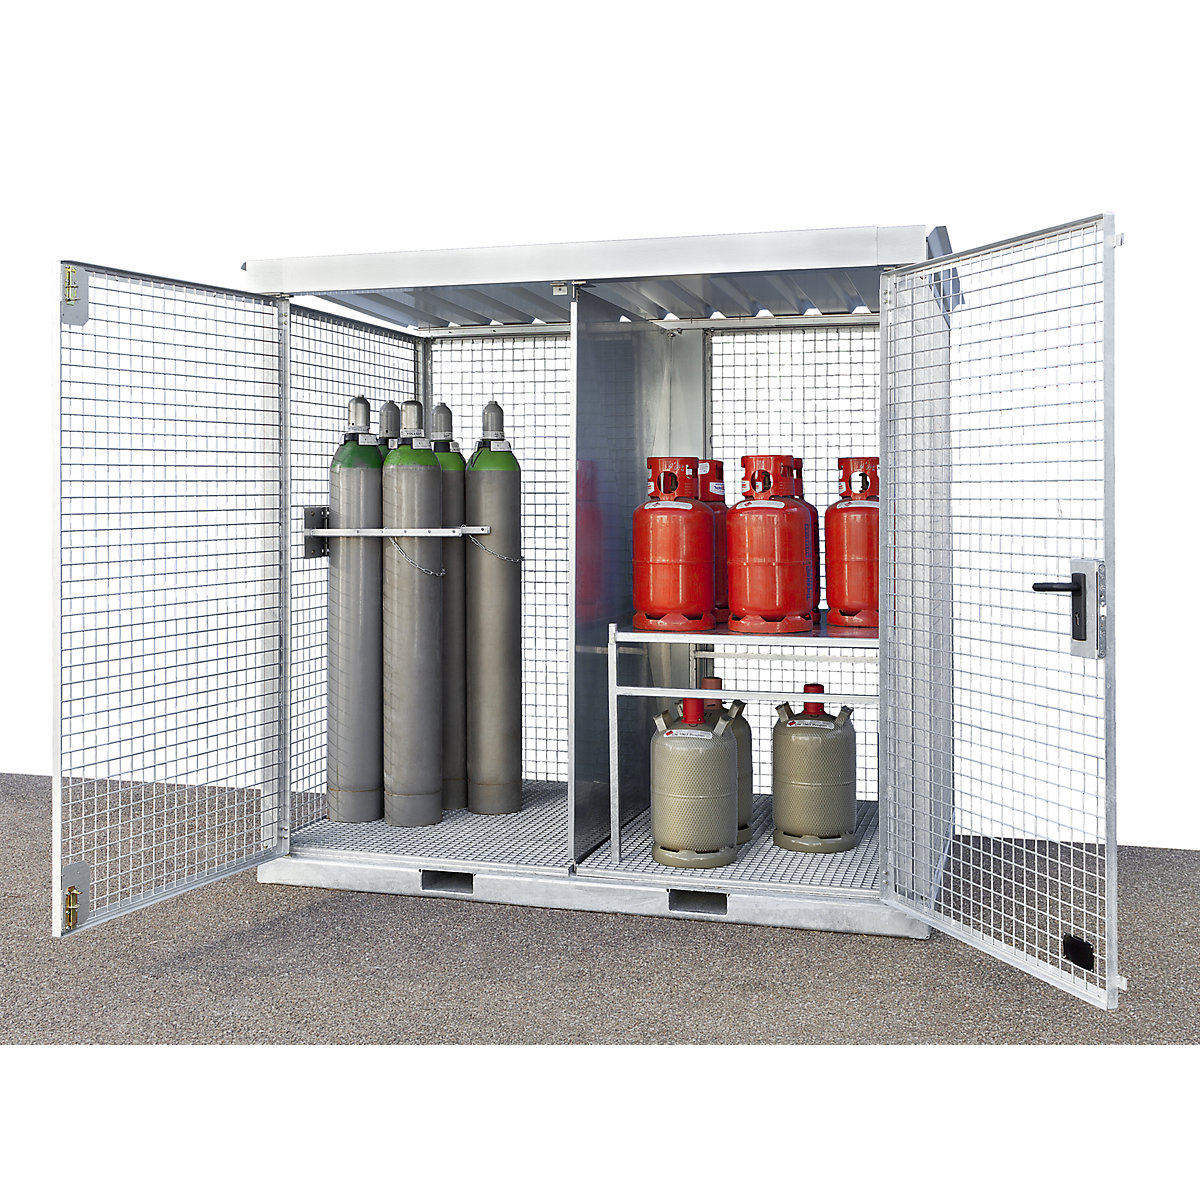 Требования к шкафам для хранения газовых баллонов - пожарная безопасность для каждого.